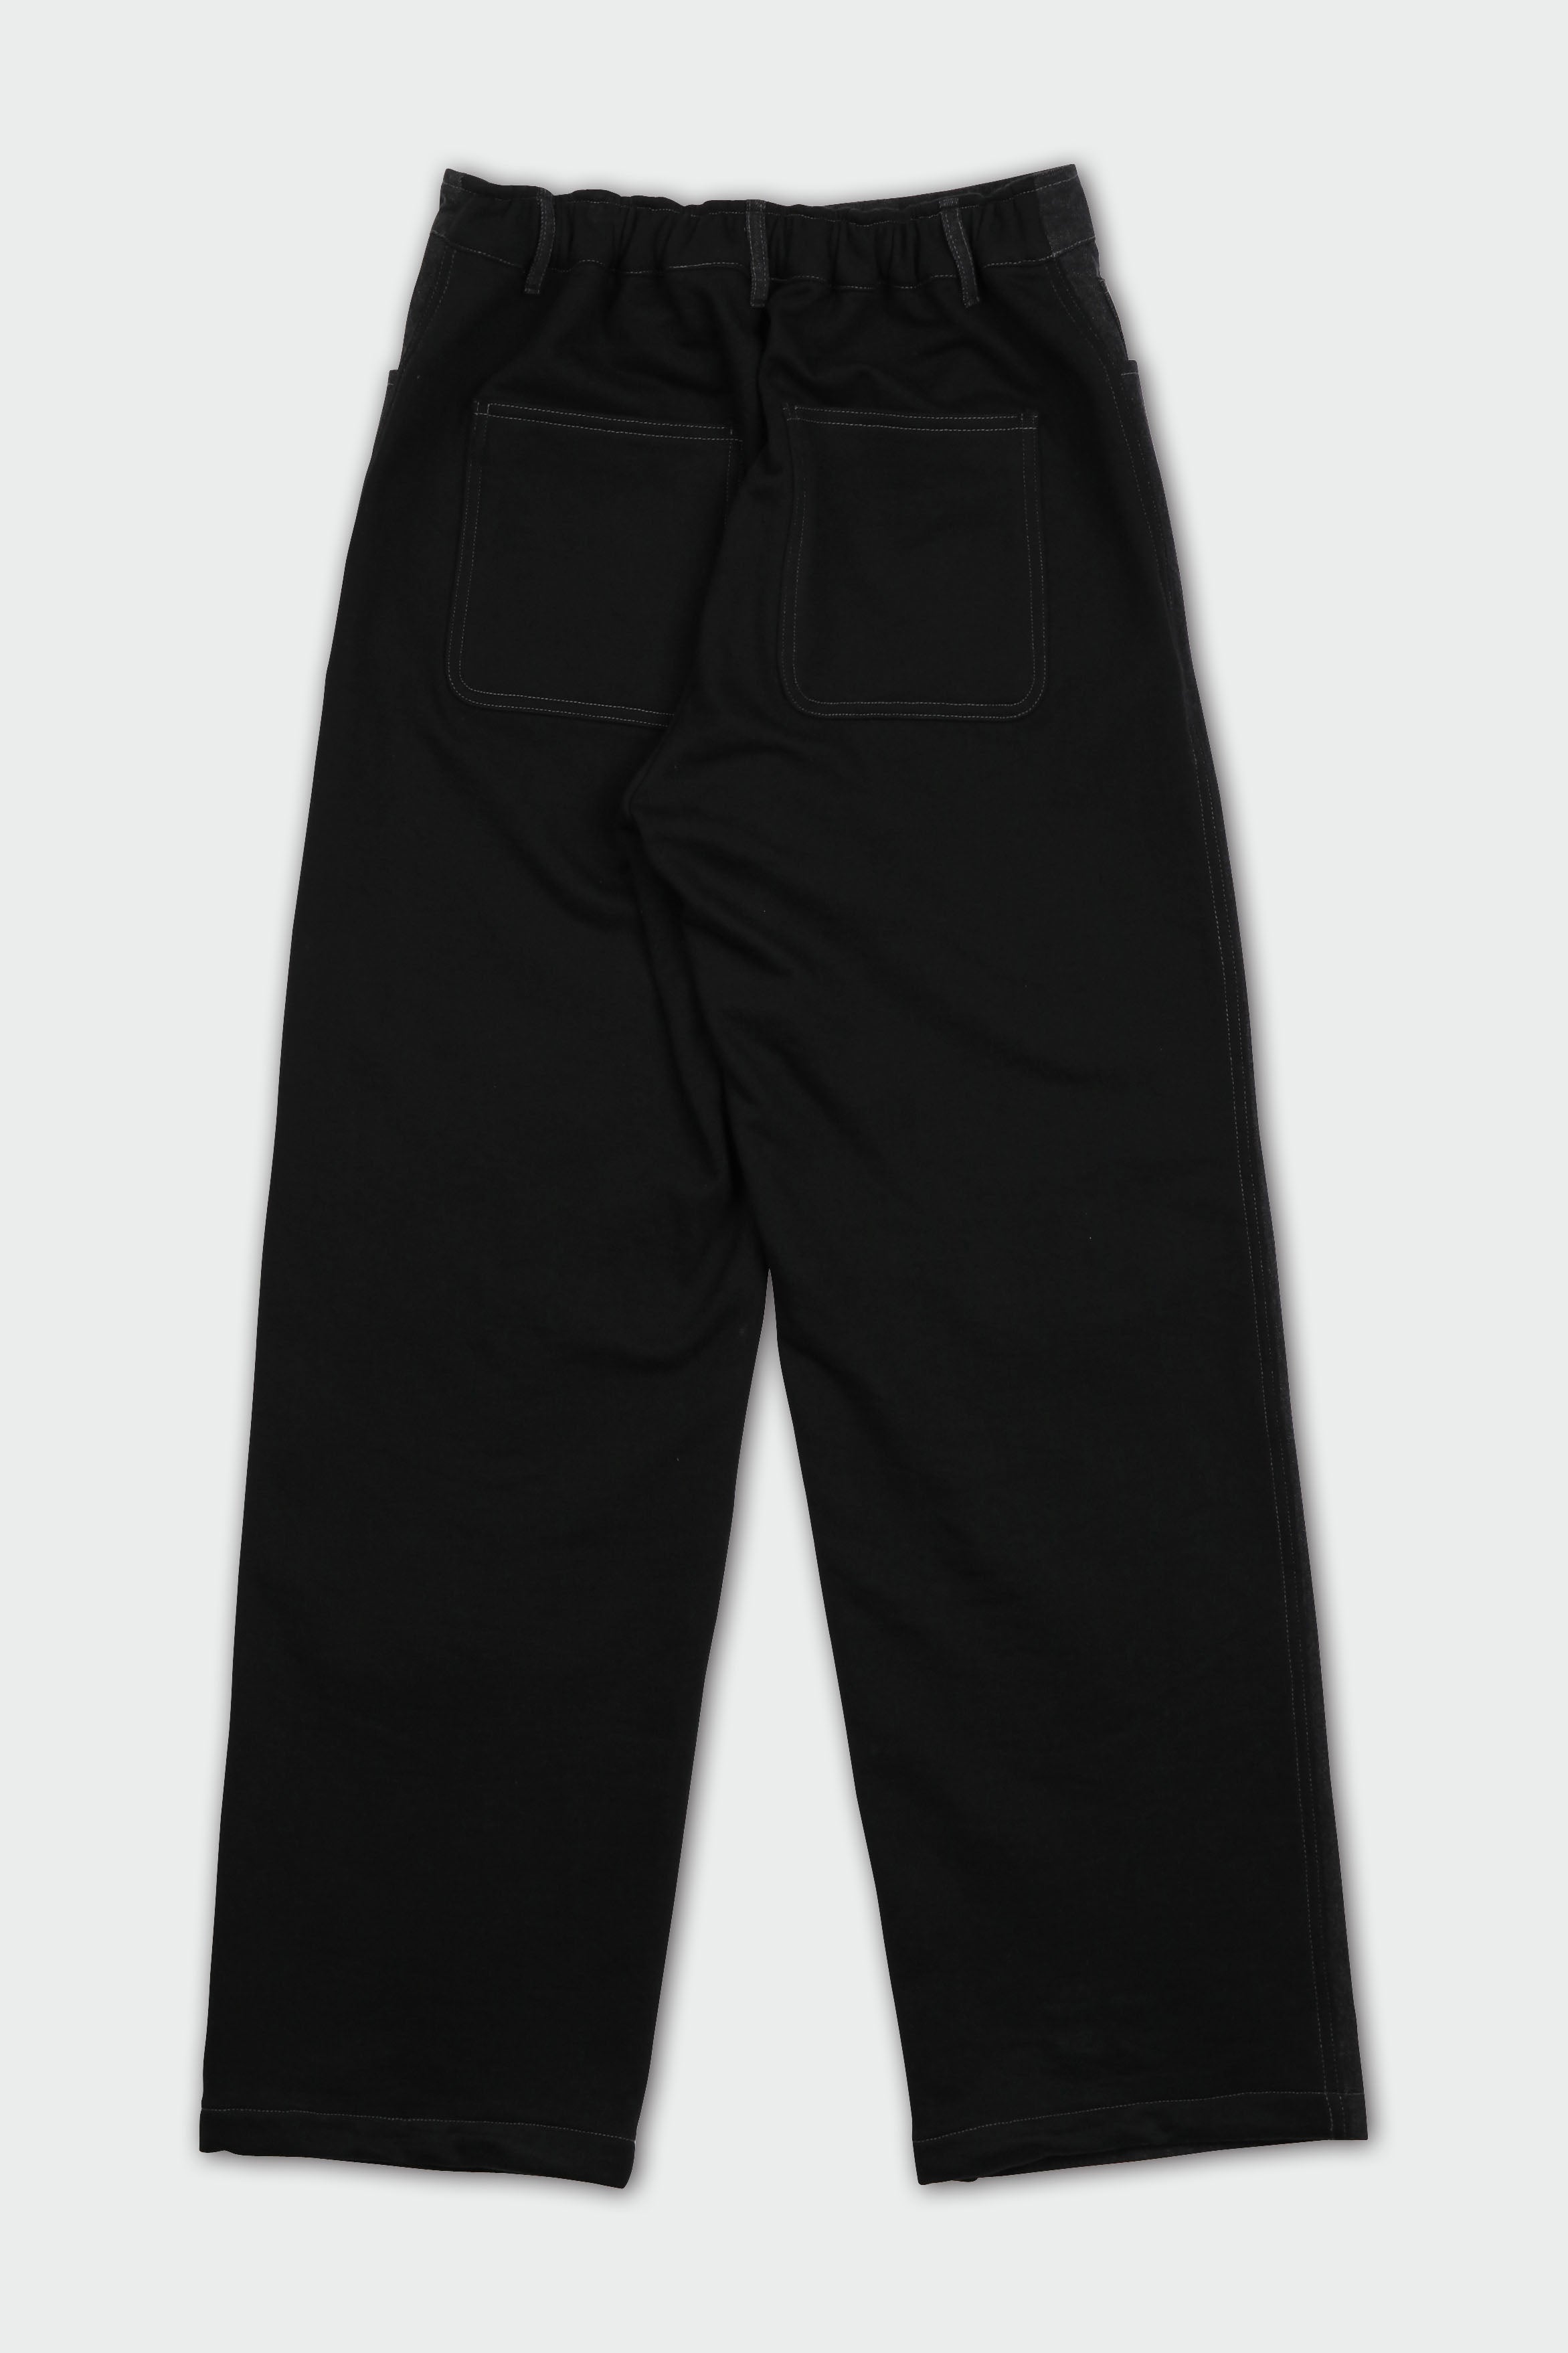 Spliced Denim pants (black)